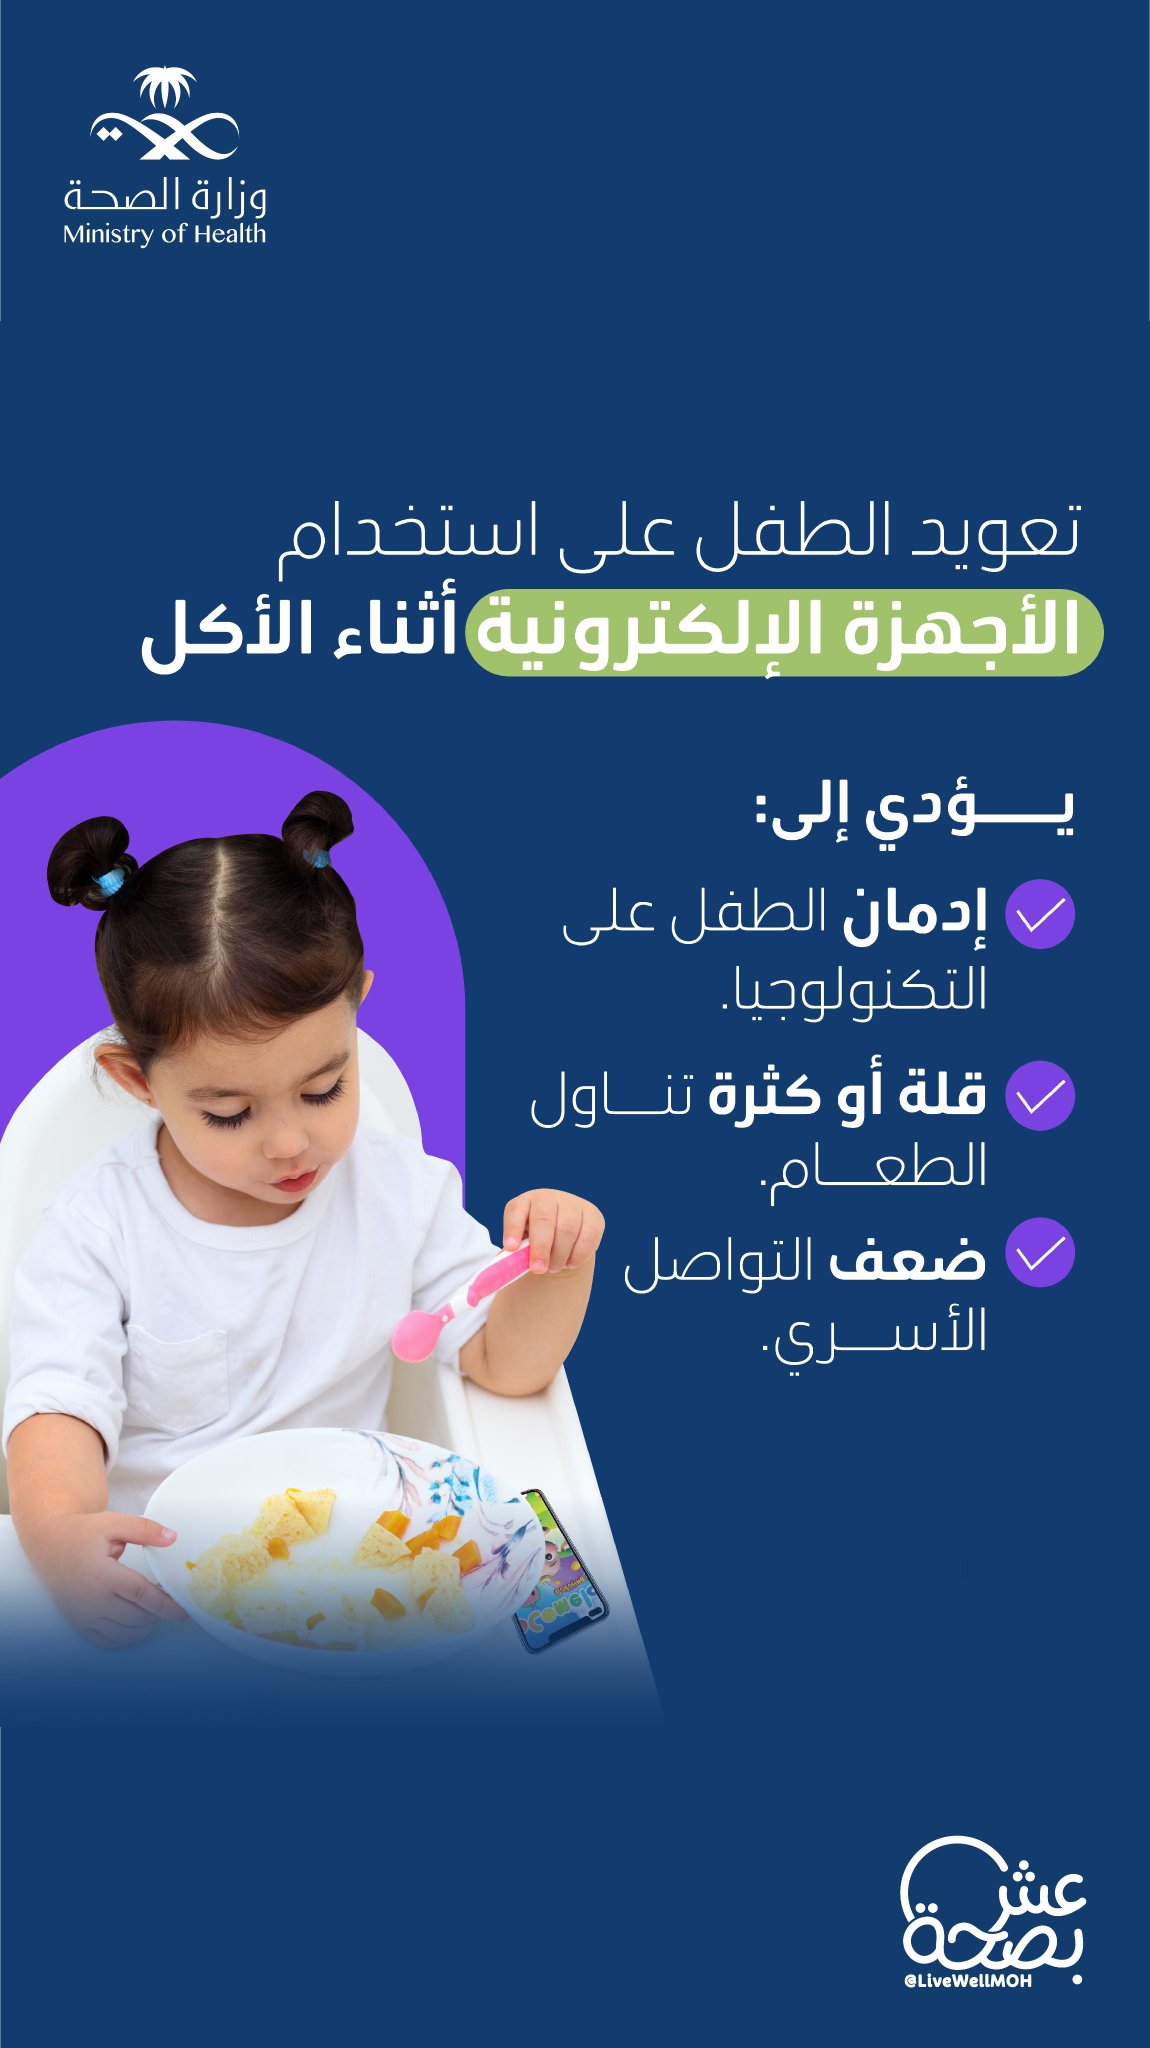 "عش بصحة" تحذر من تعويد الطفل على استخدام الجوال أثناء تناول الطعام 